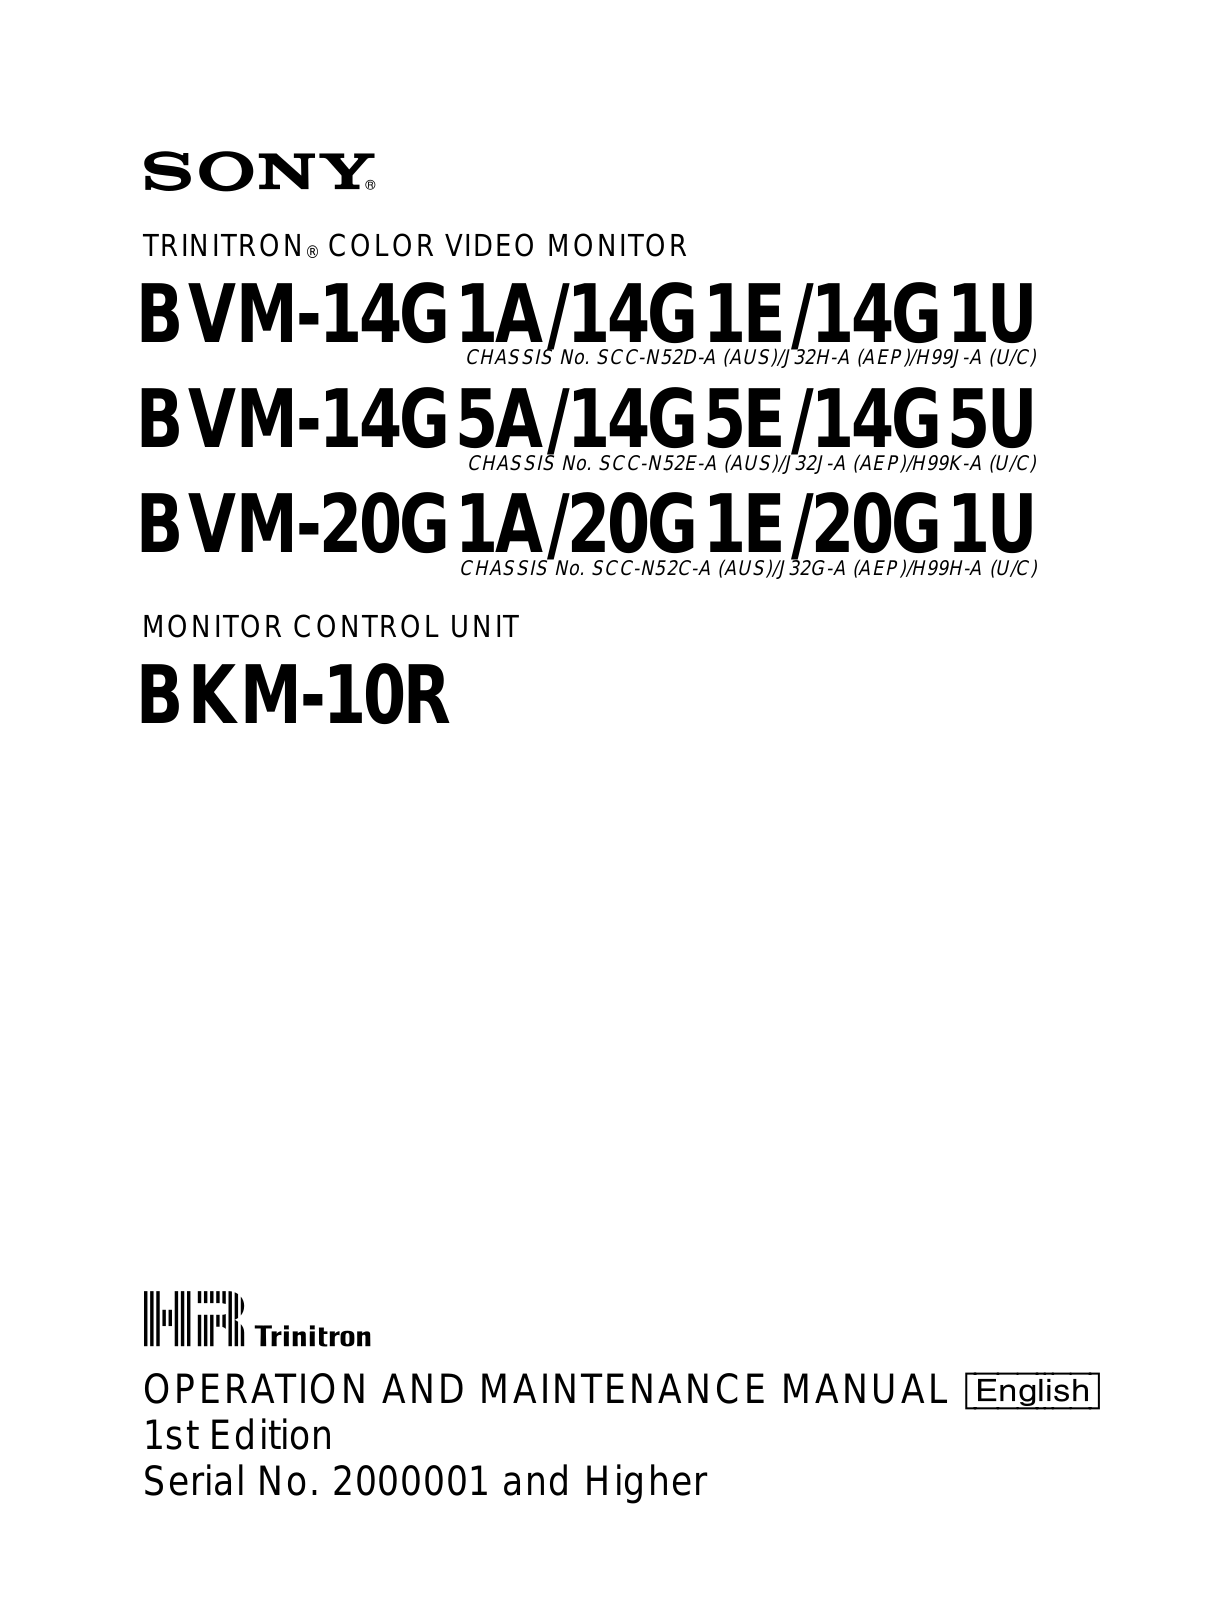 Sony BVM-14G1, BVM-14G5, BVM-20G1 Service Manual